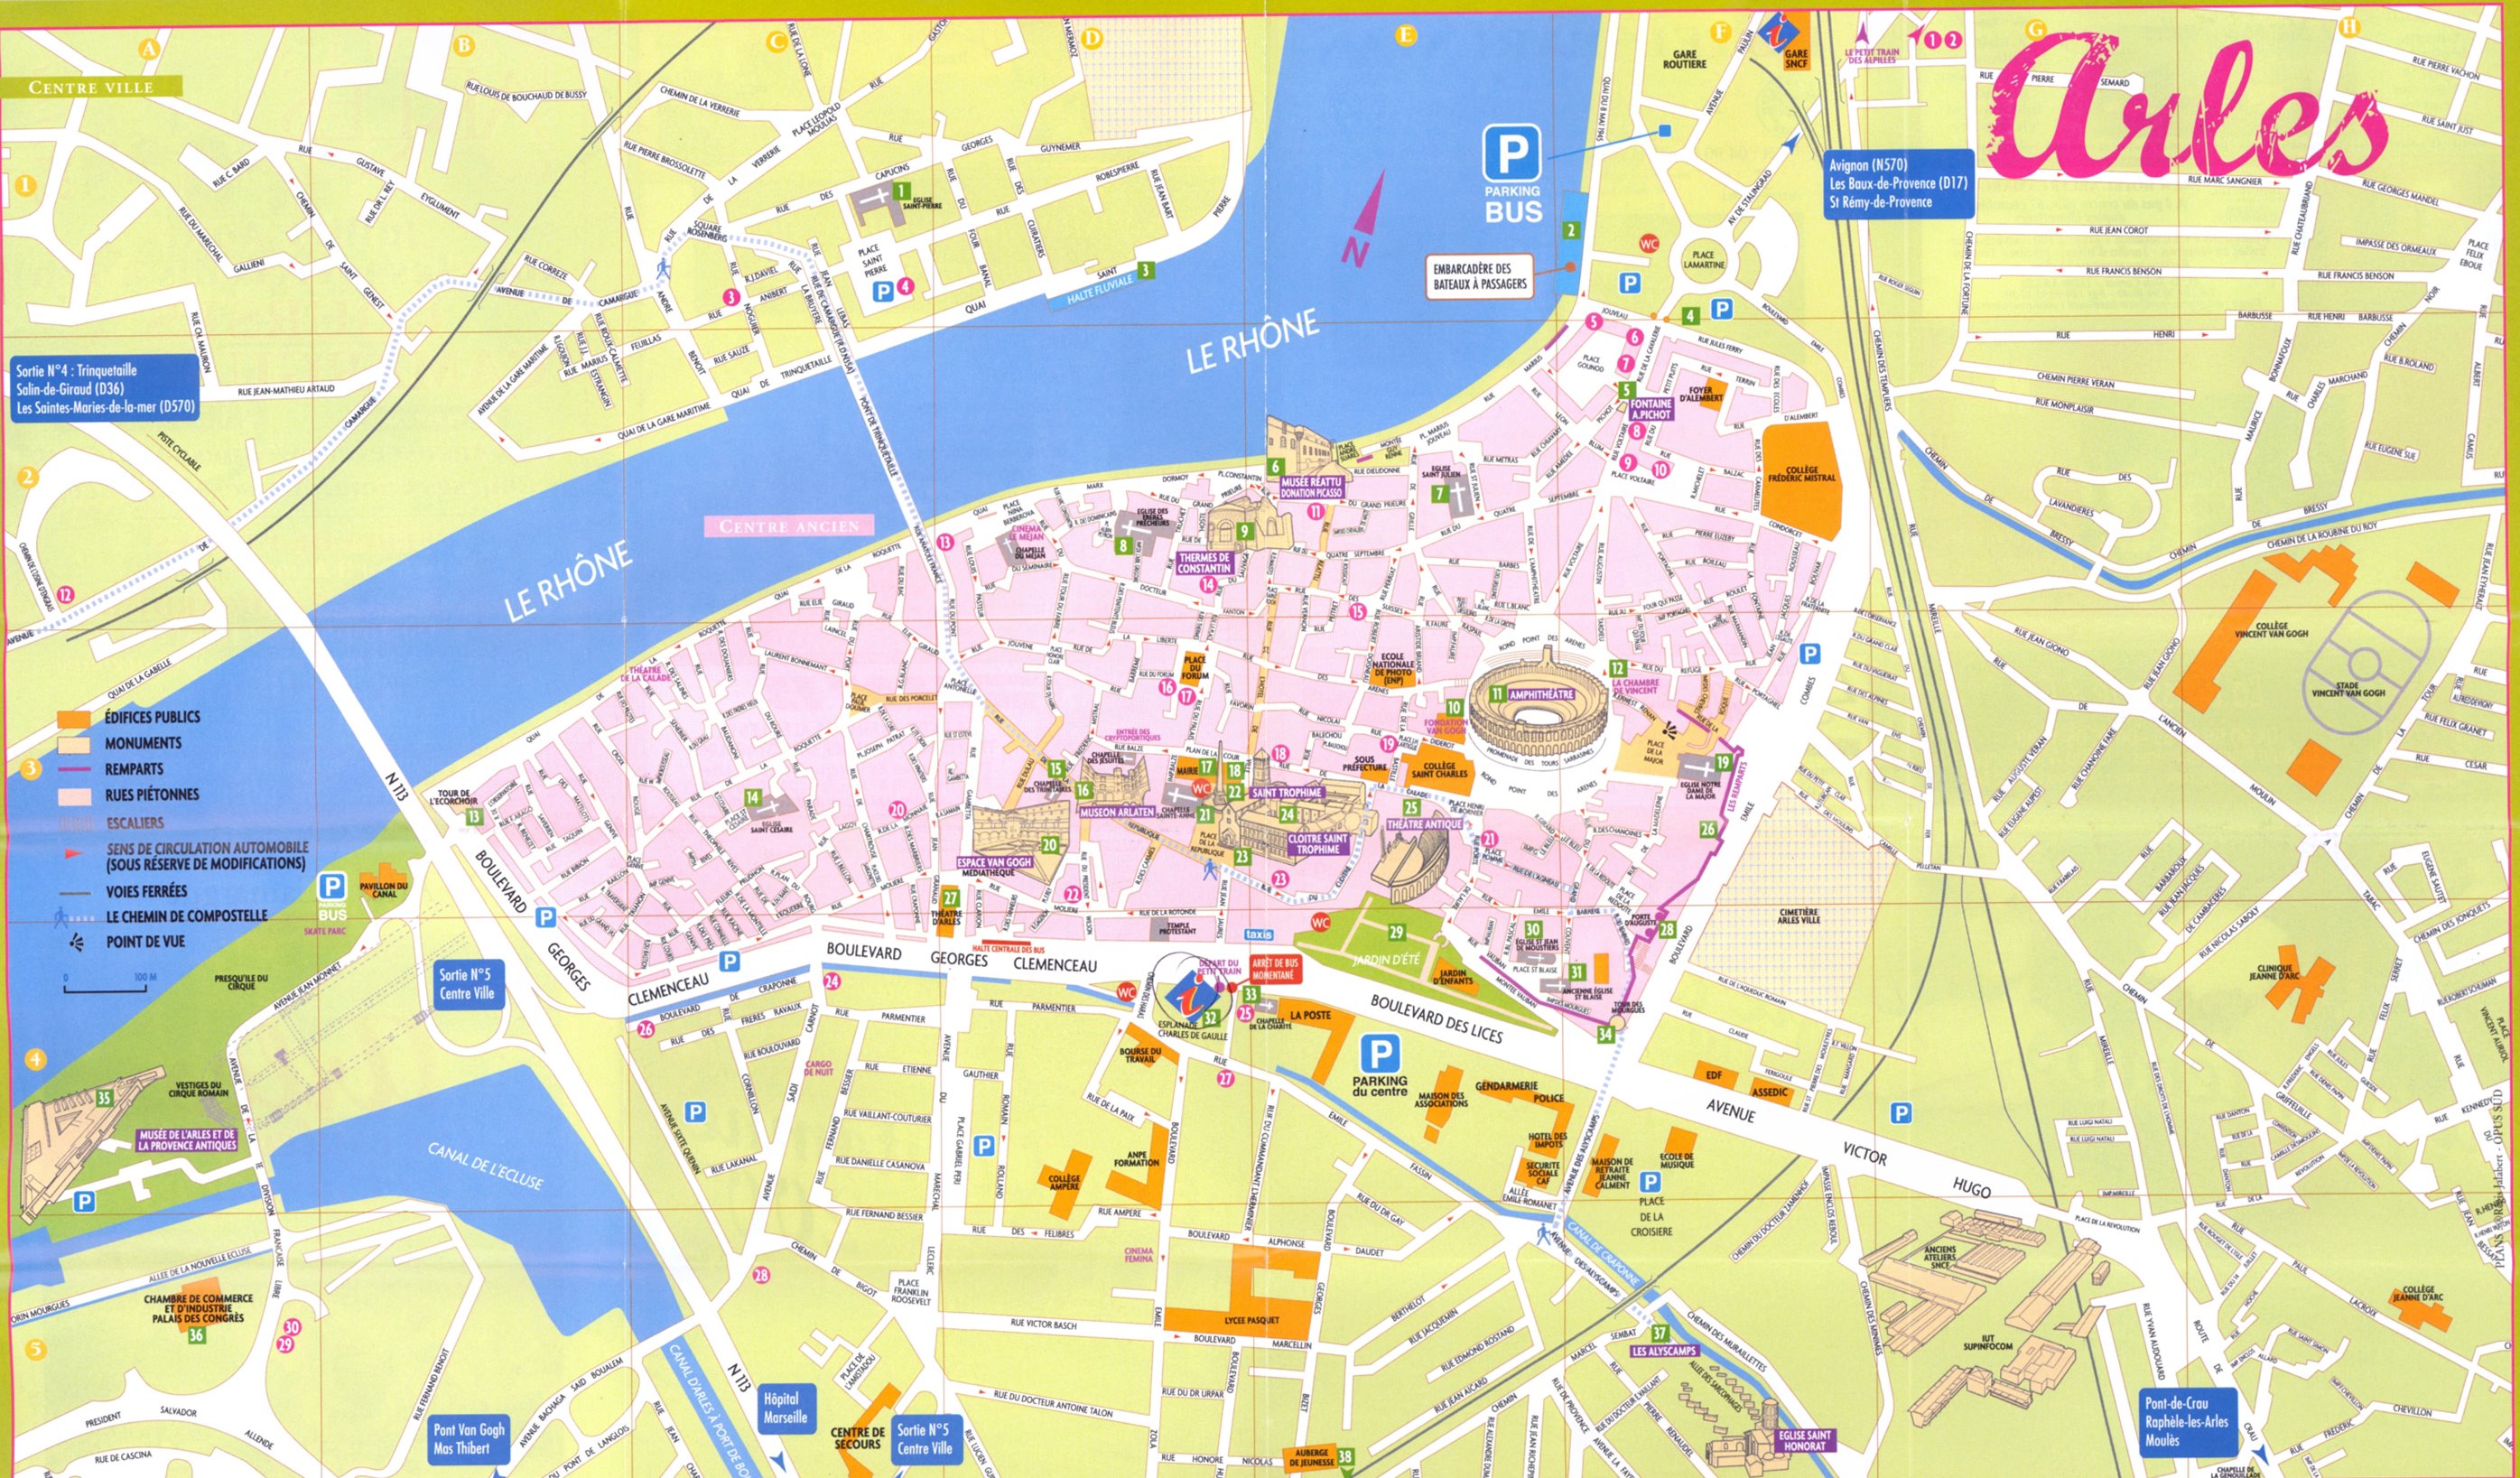 Stadtplan von Arles | Detaillierte gedruckte Karten von Arles